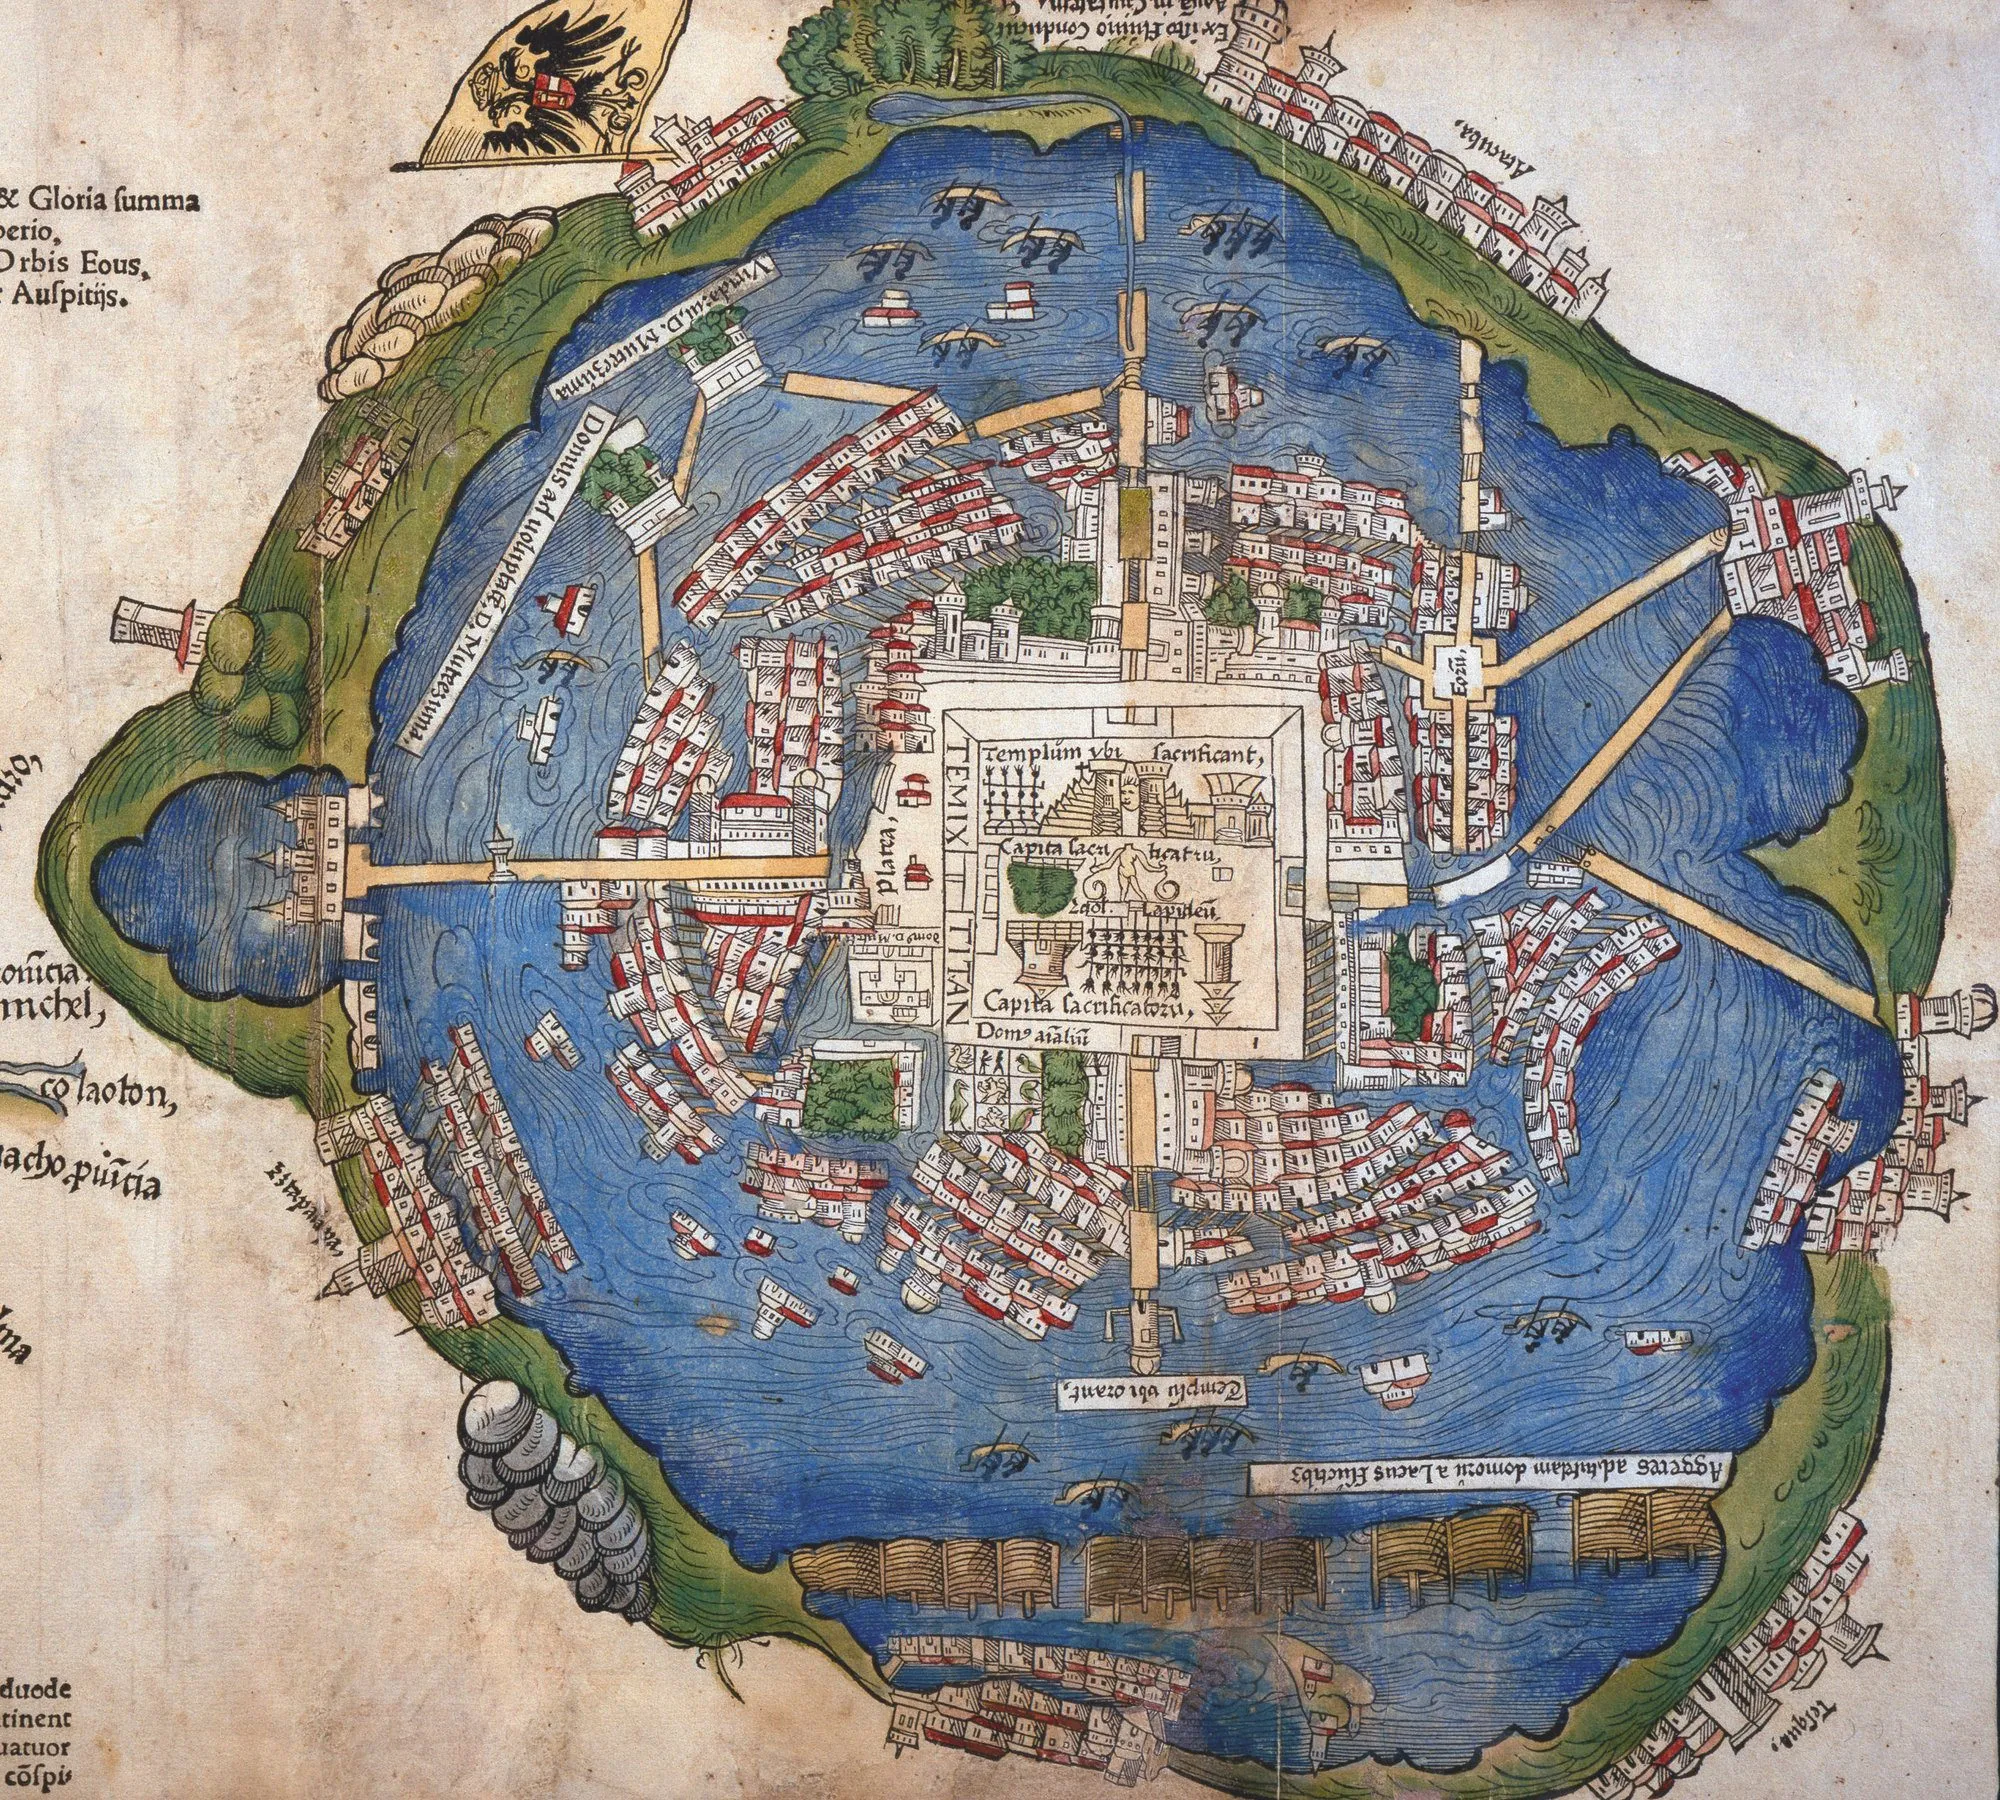 Plan de Tenochtitlan, 1524, gravure colorée à la main (détail), d'après la carte envoyée par Cortès à Charles Quint, imprimée à Nuremberg